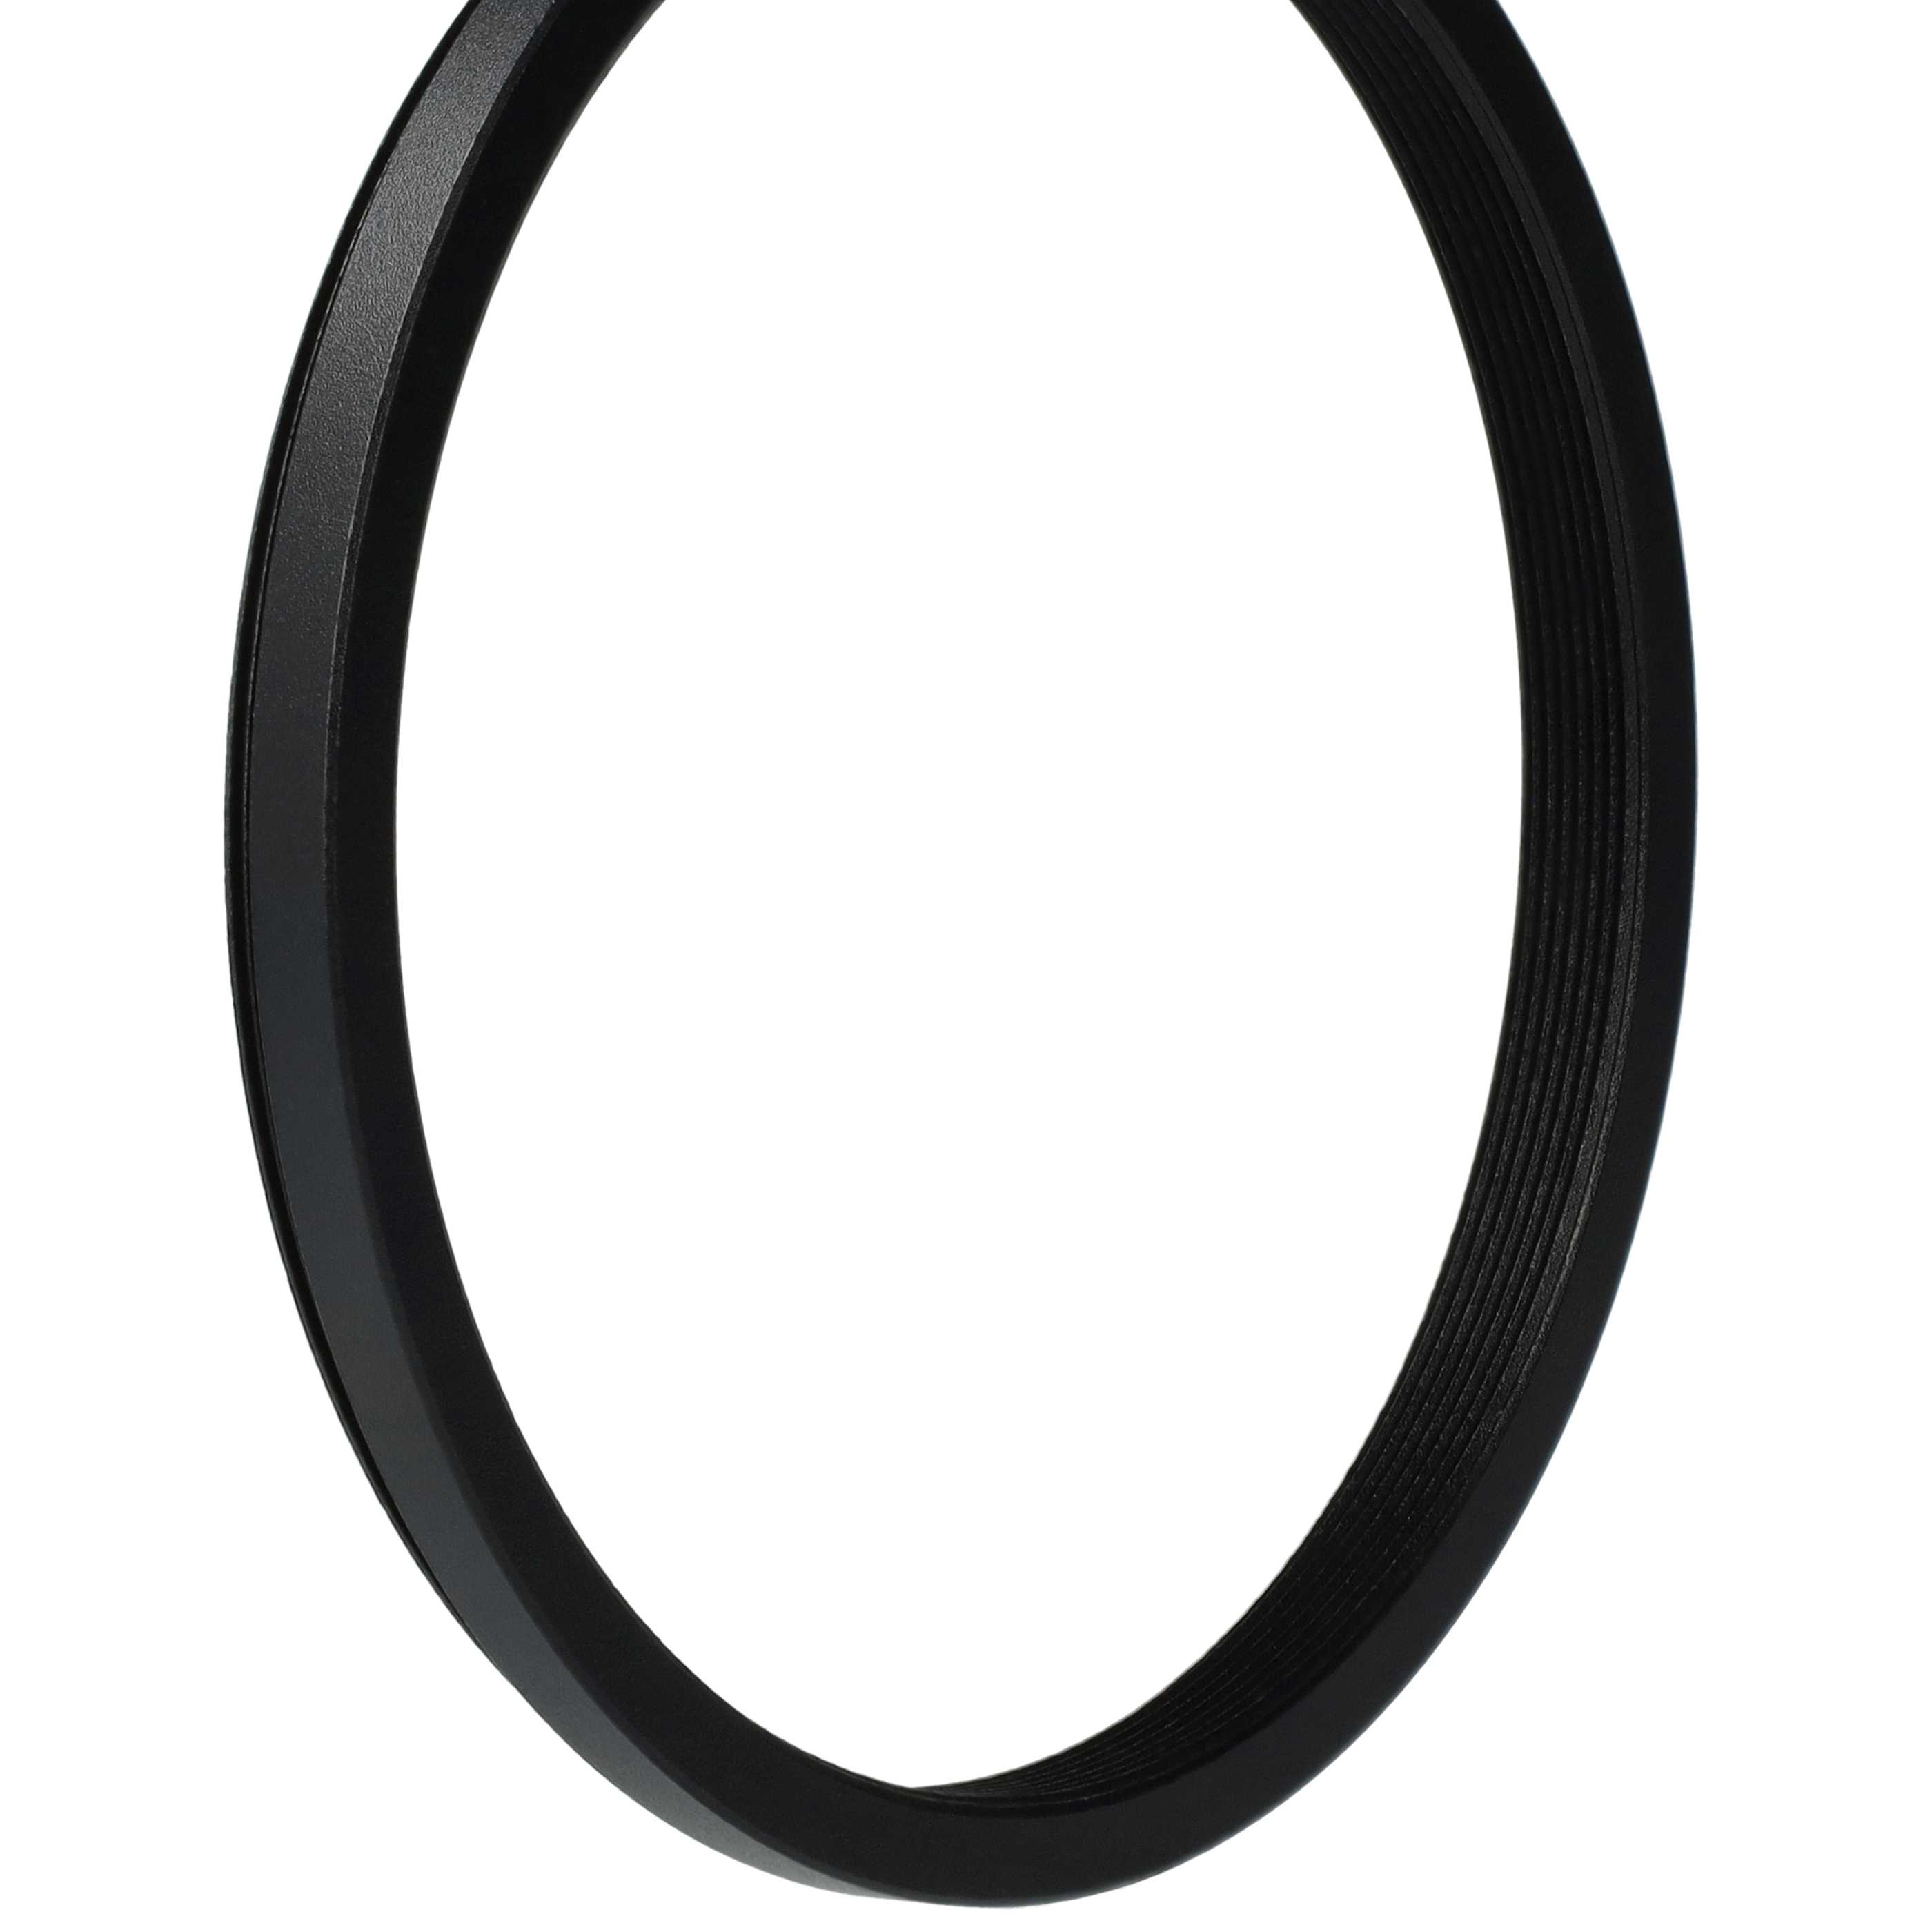 Step-Down-Ring Adapter von 77 mm auf 72 mm passend für Kamera Objektiv - Filteradapter, Metall, schwarz